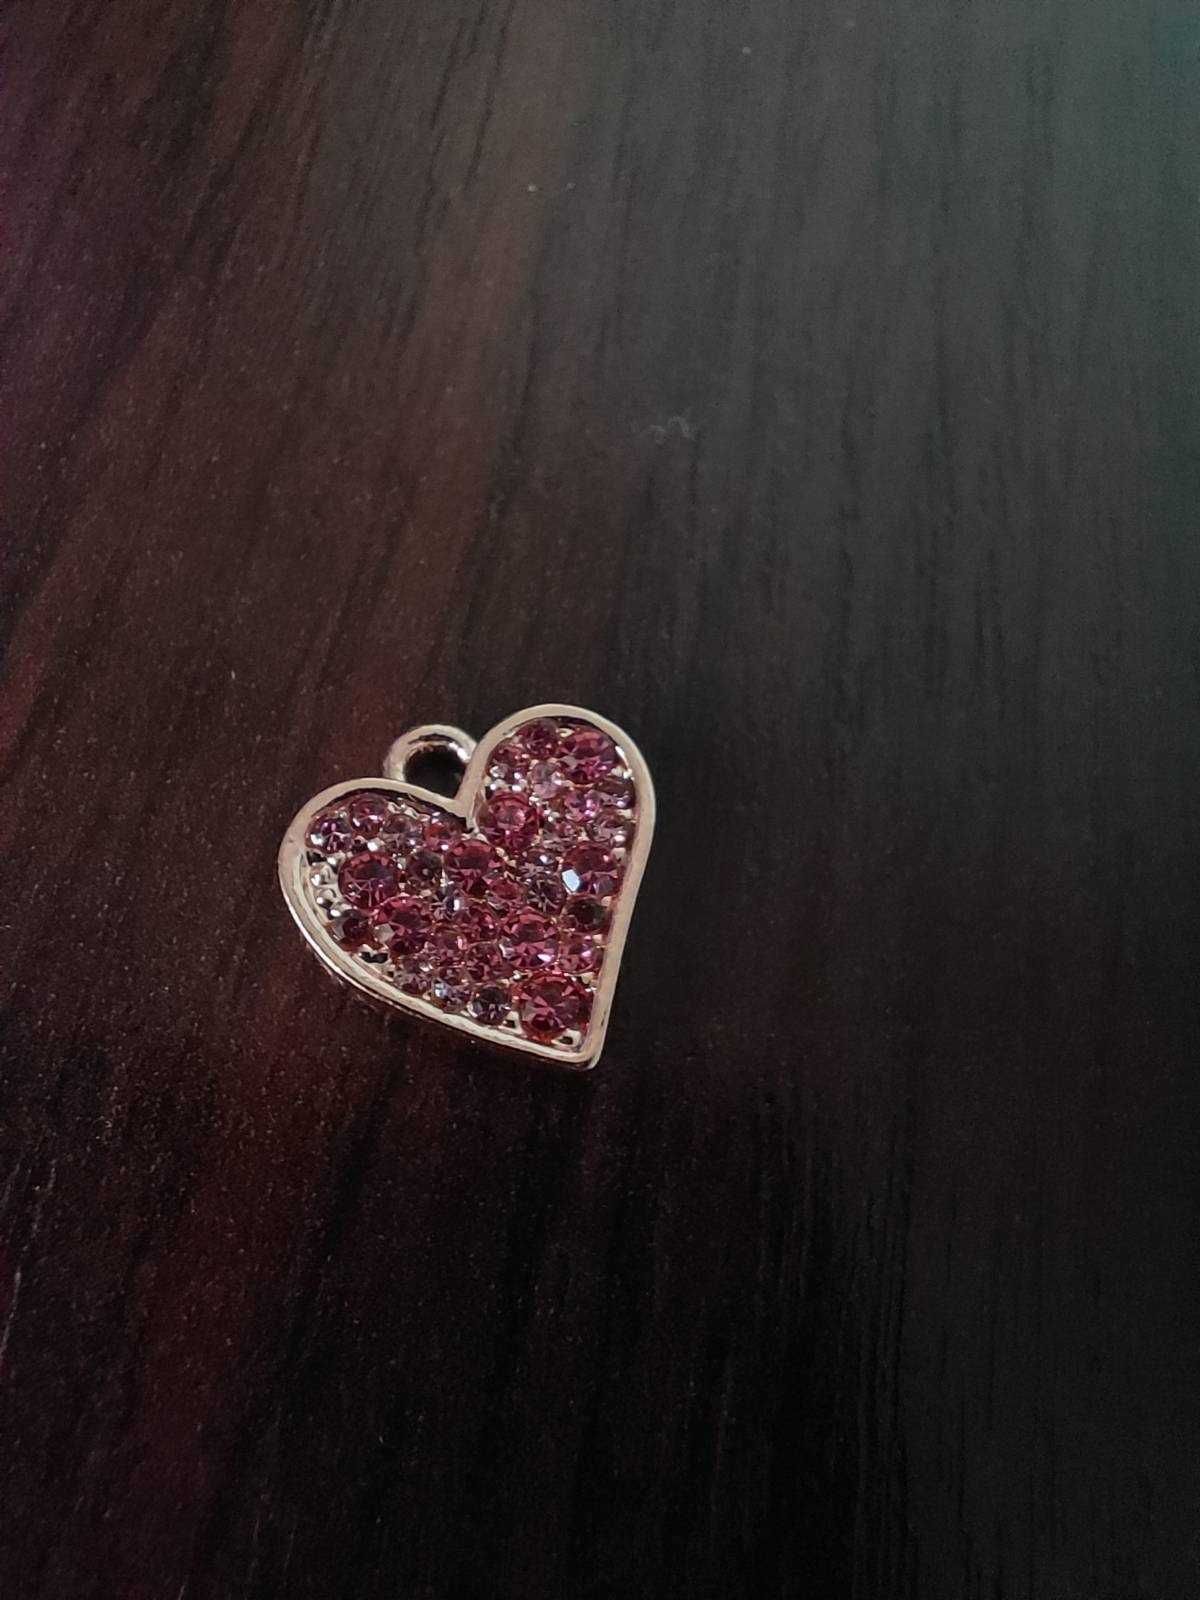 Złoto-różowy charms w kształcie serca wraz z zawieszką na naszyjnik